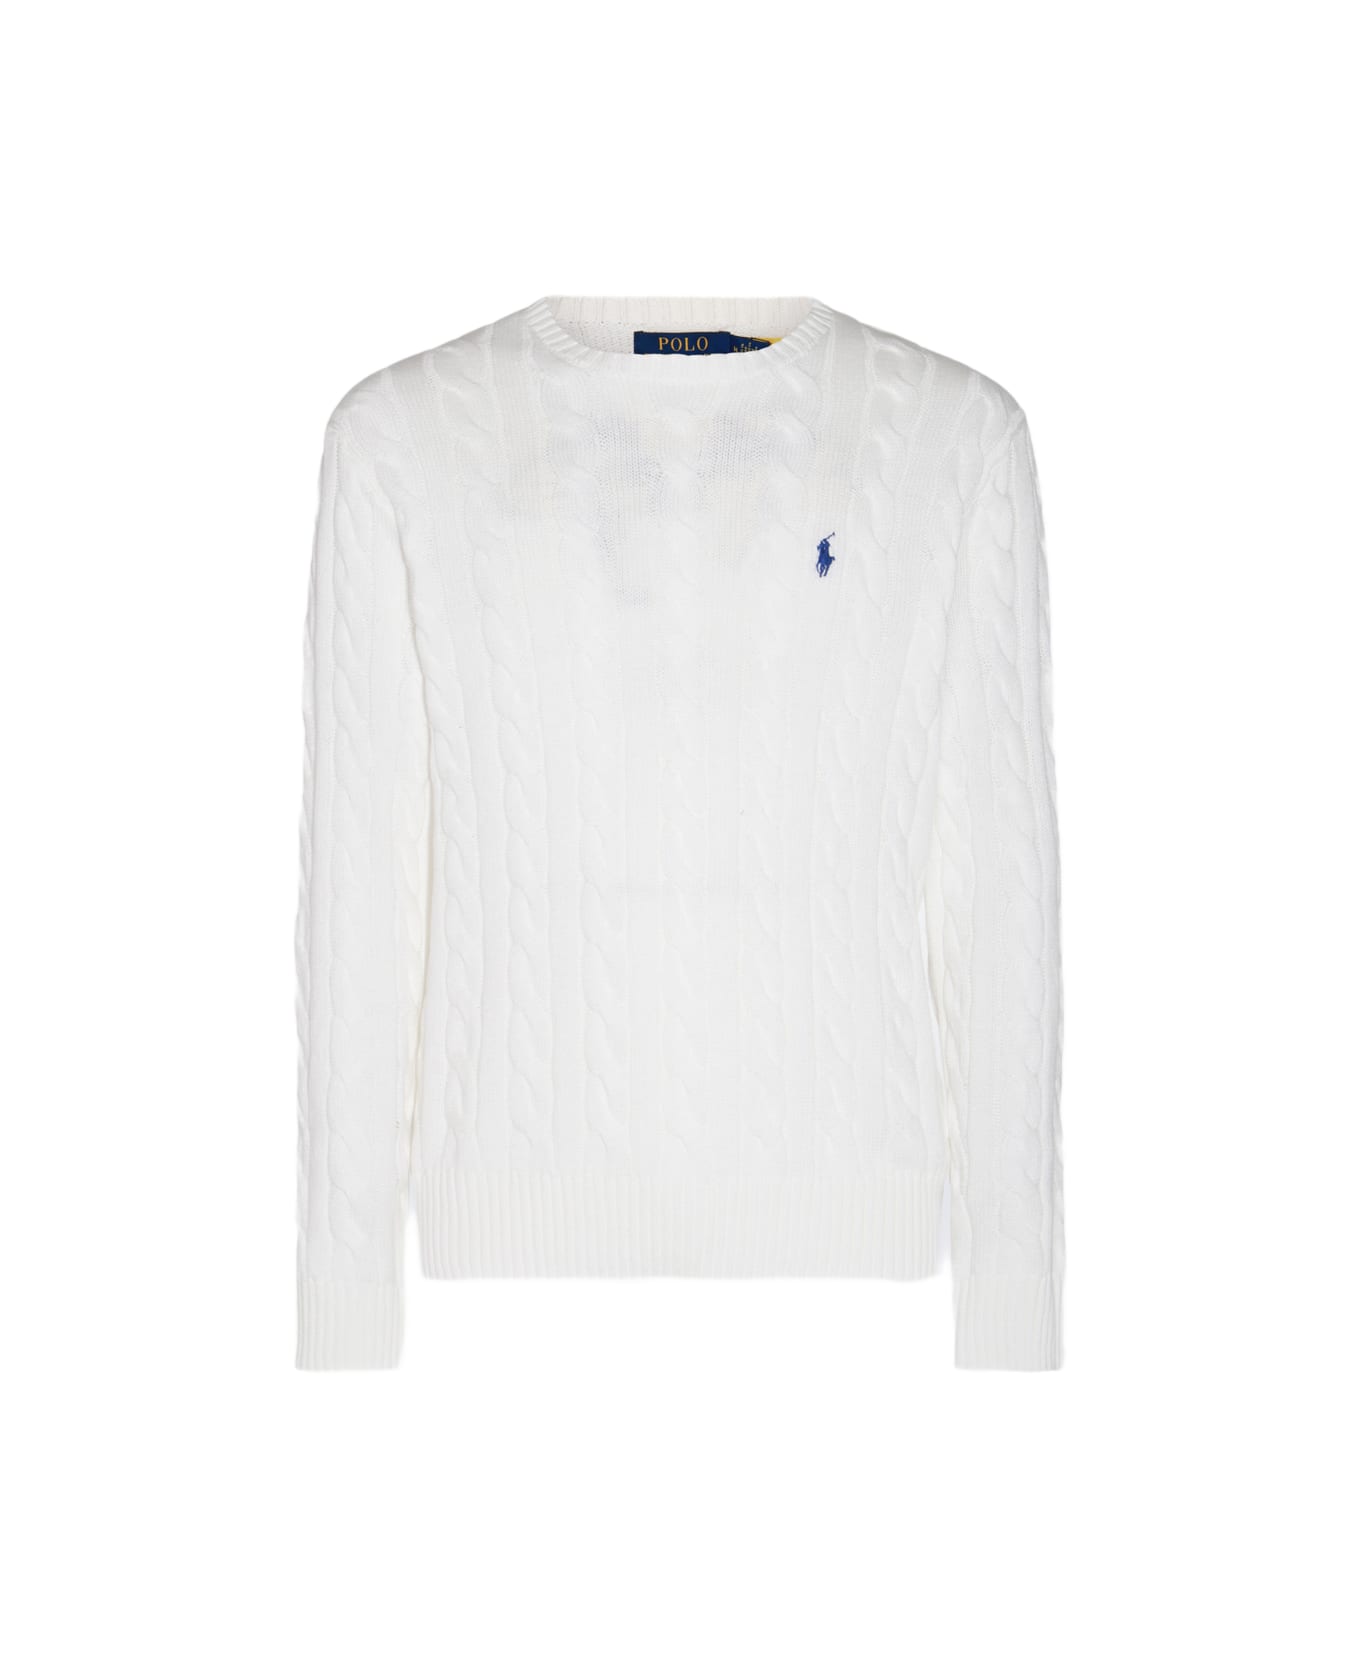 Polo Ralph Lauren White Cotton Knitwear - White